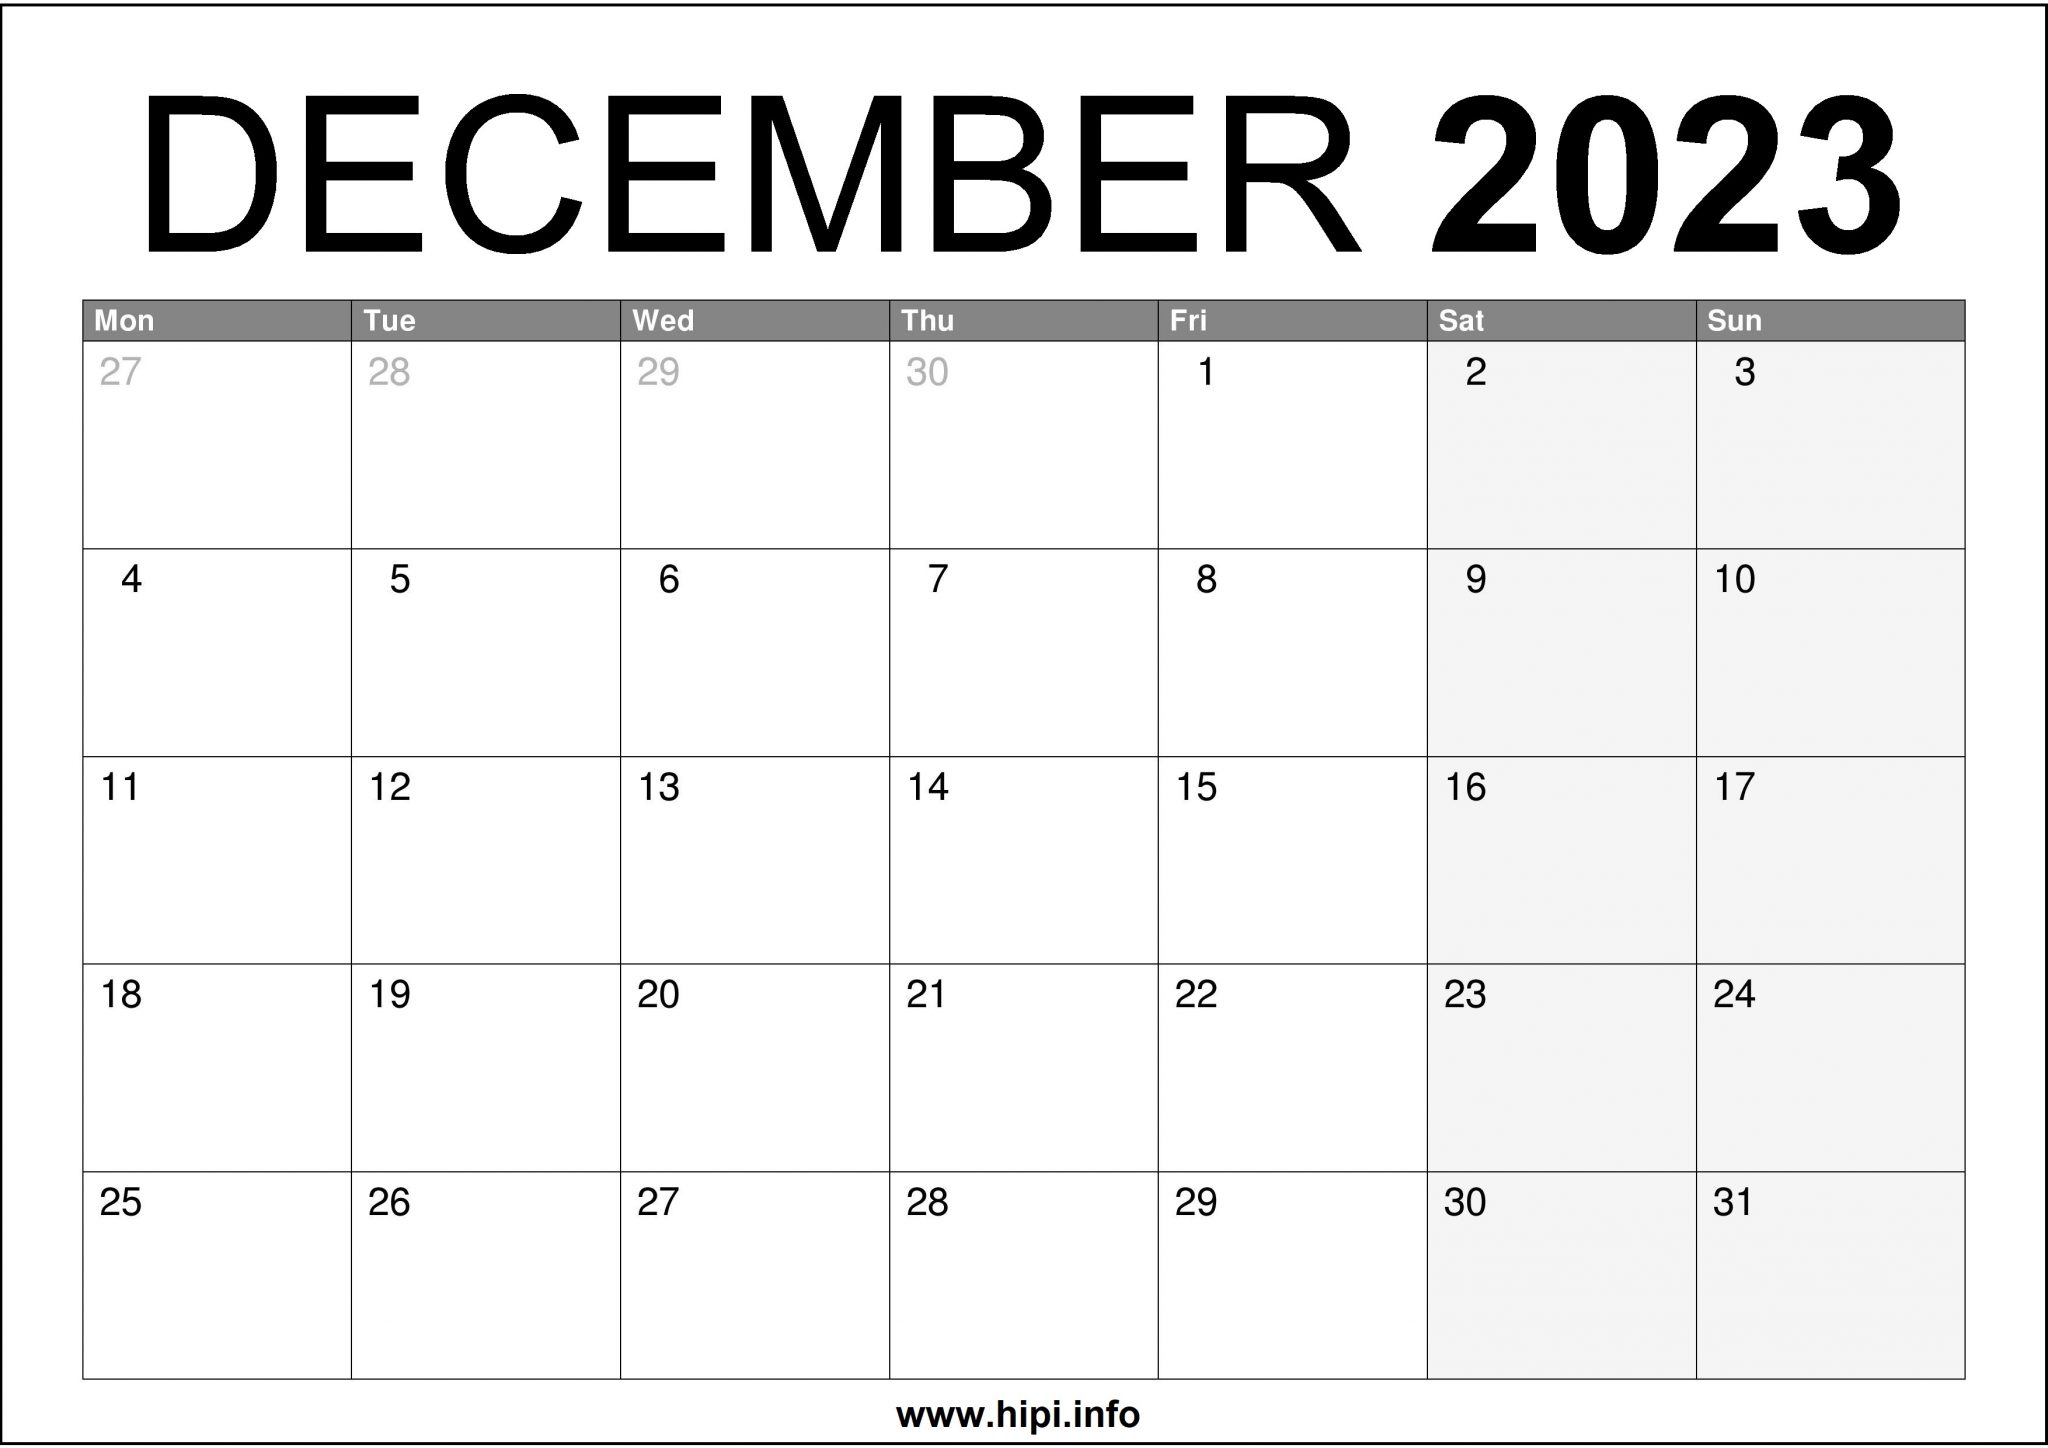 December 2023 UK Calendar A4 Size Free Hipi.info